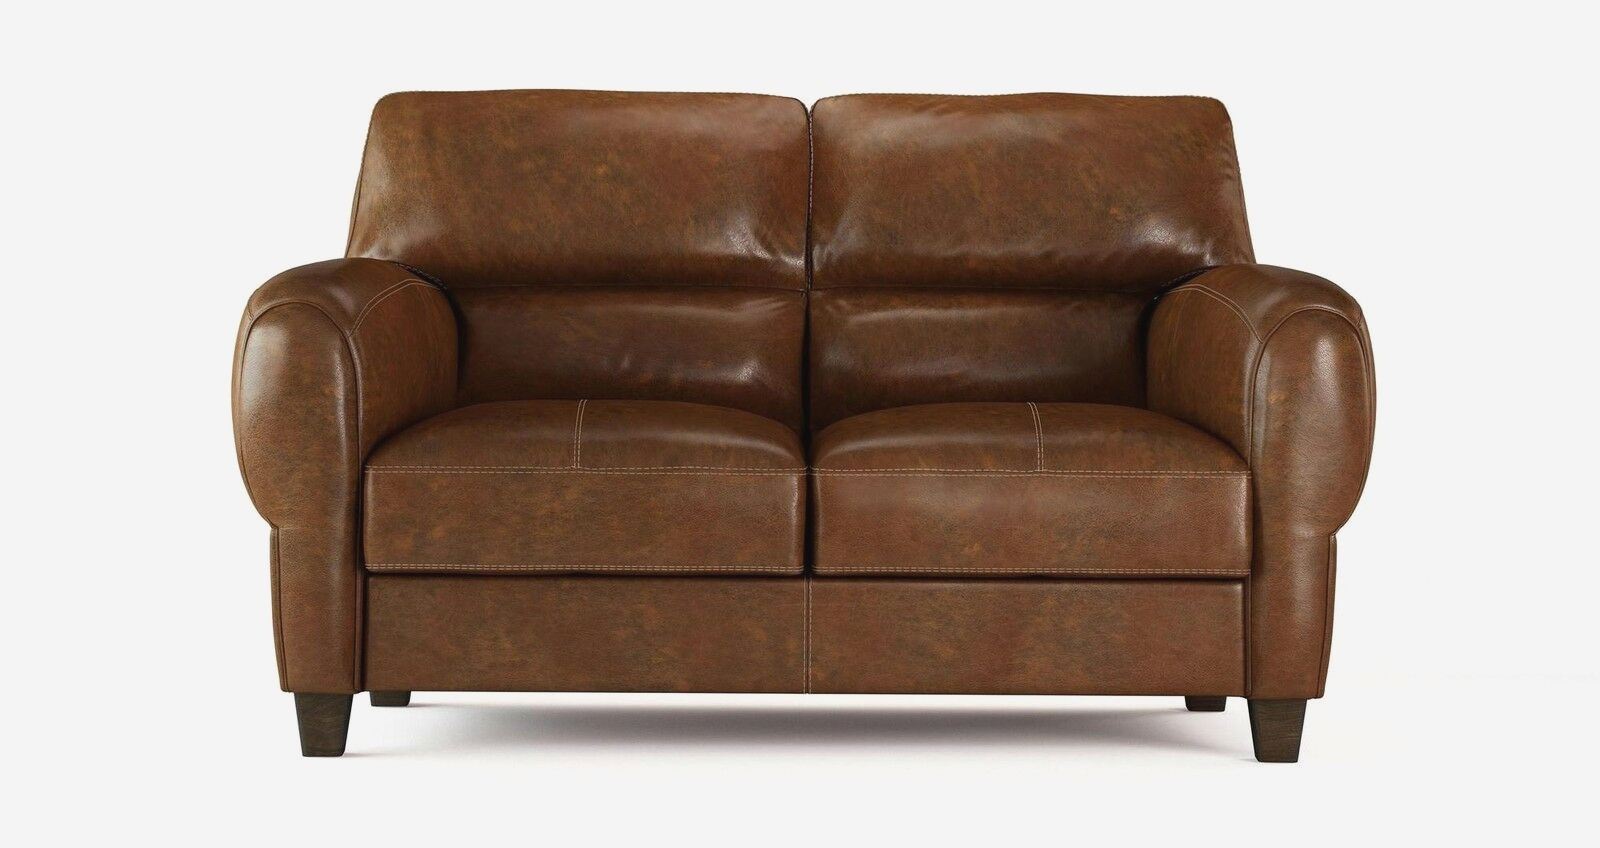 proper leather sofa care